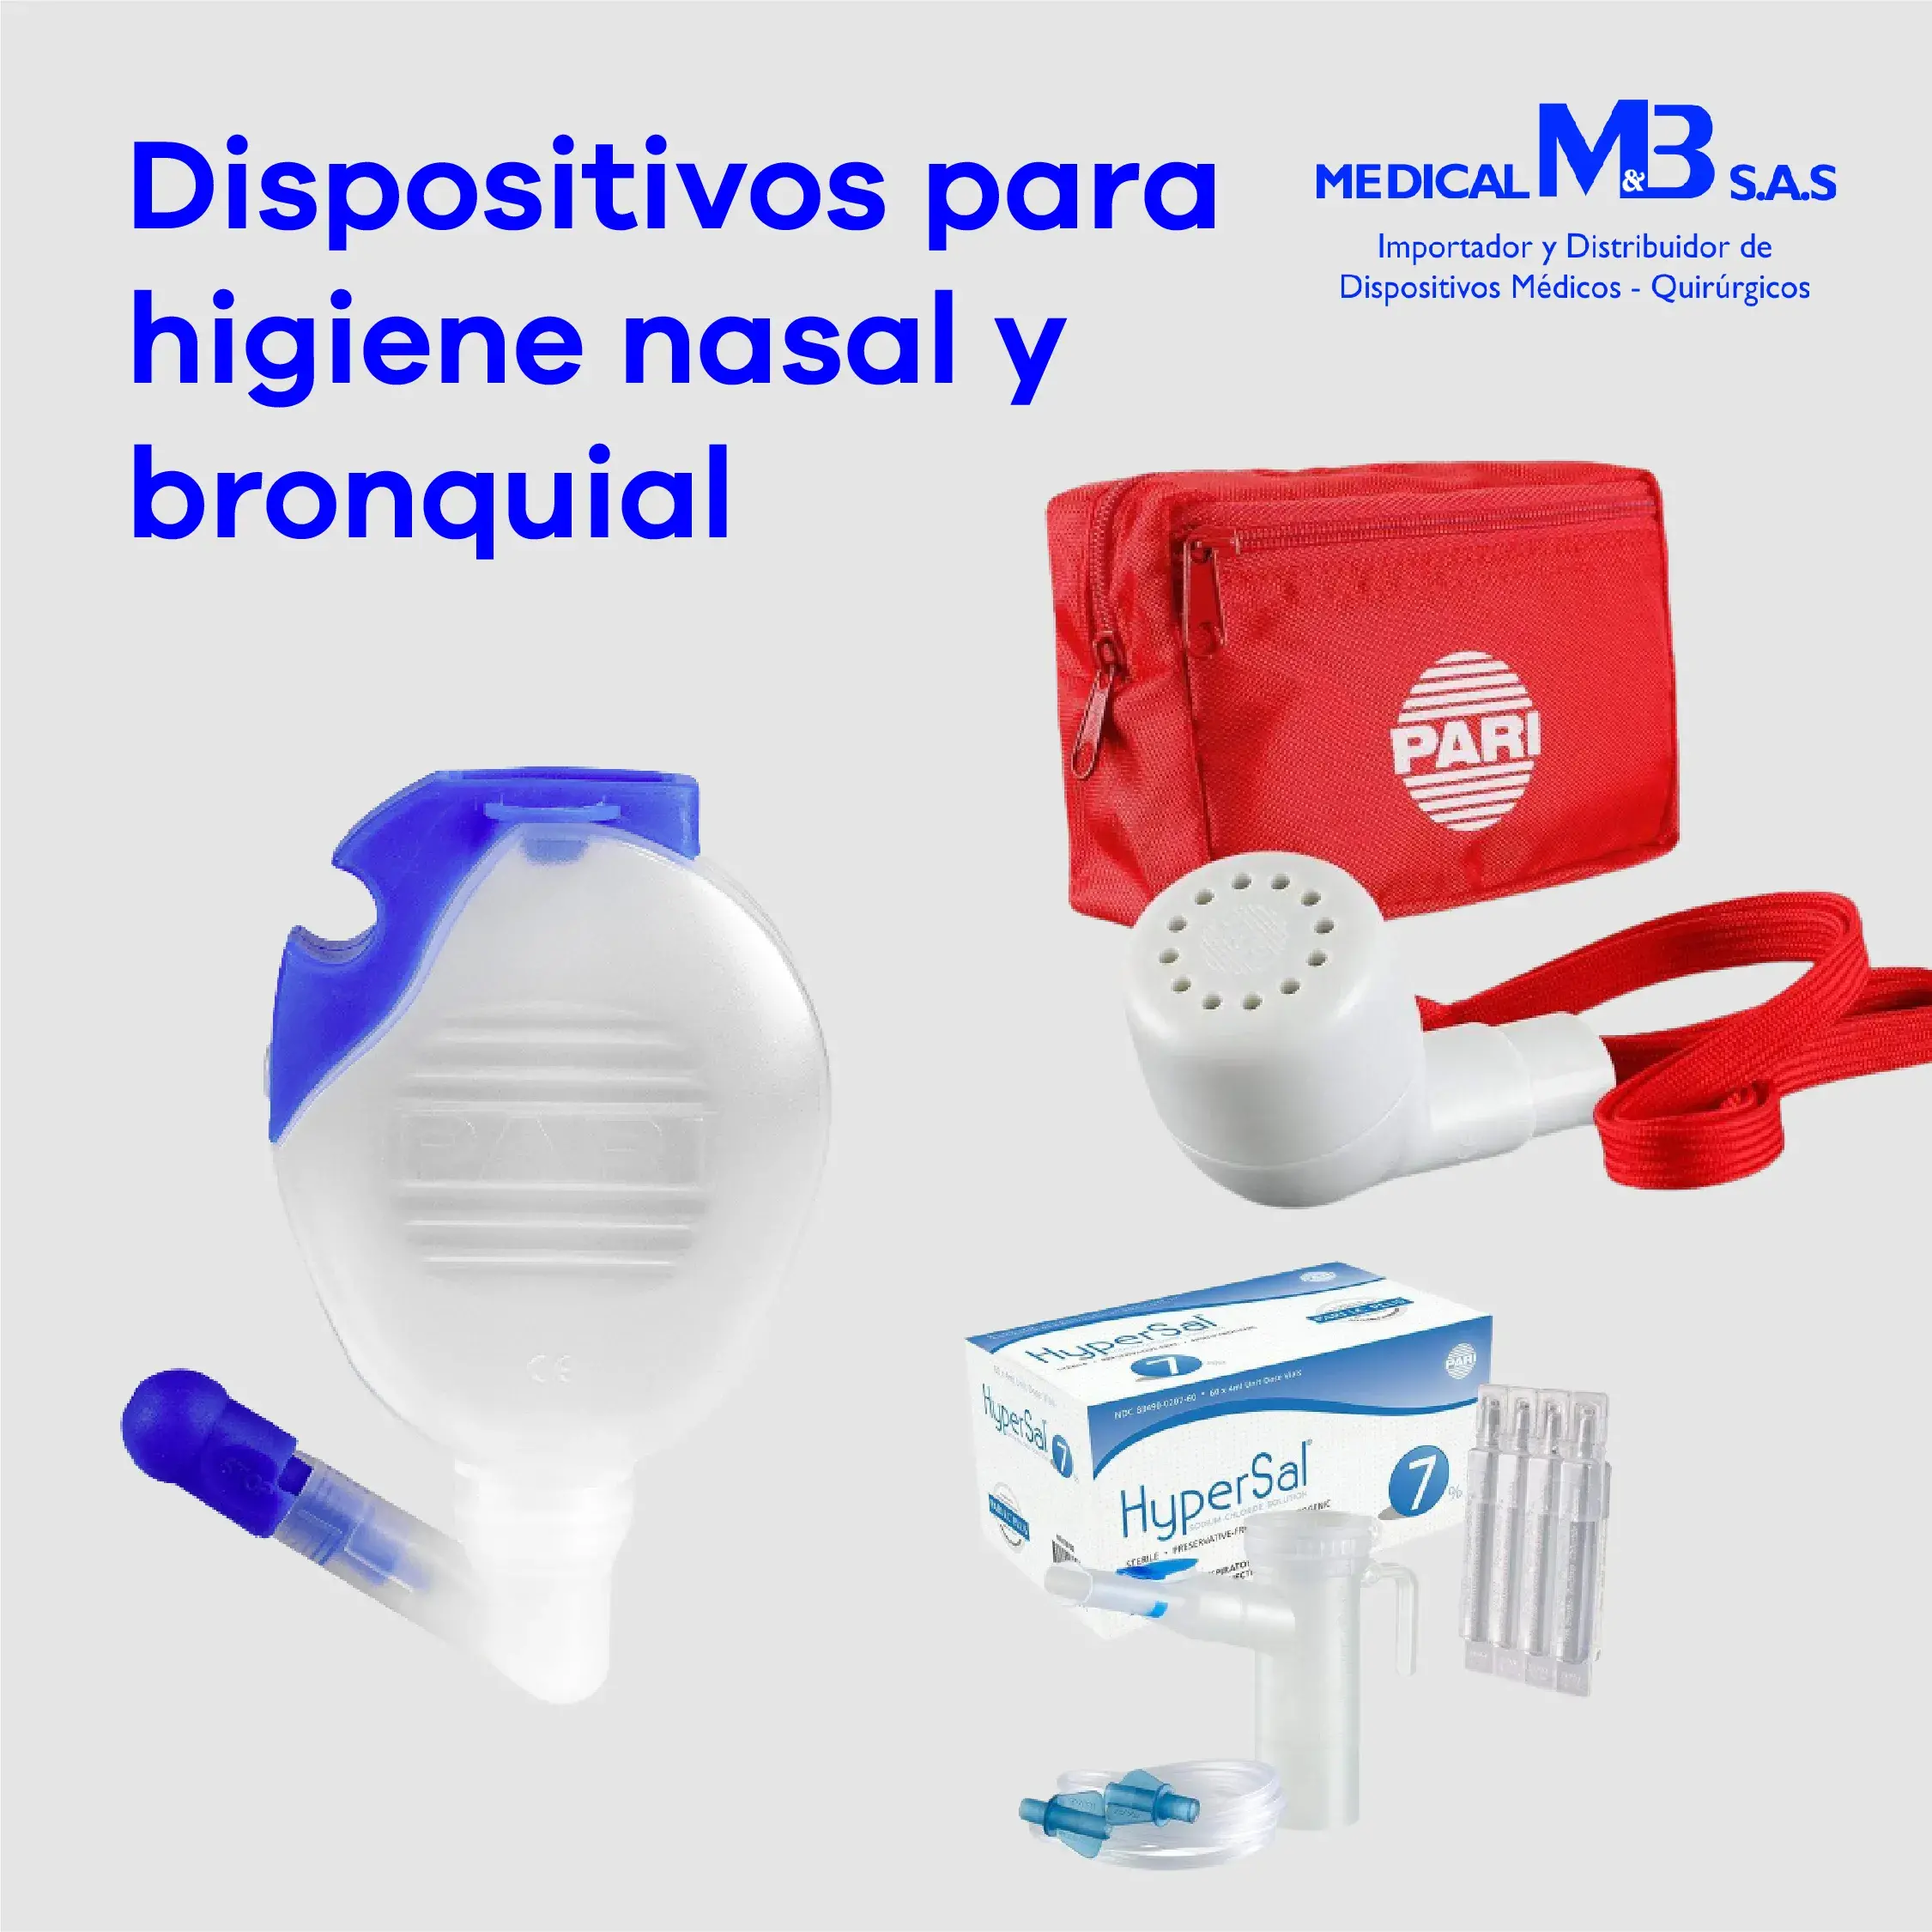 Dispositivos para higiene nasal y bronquial